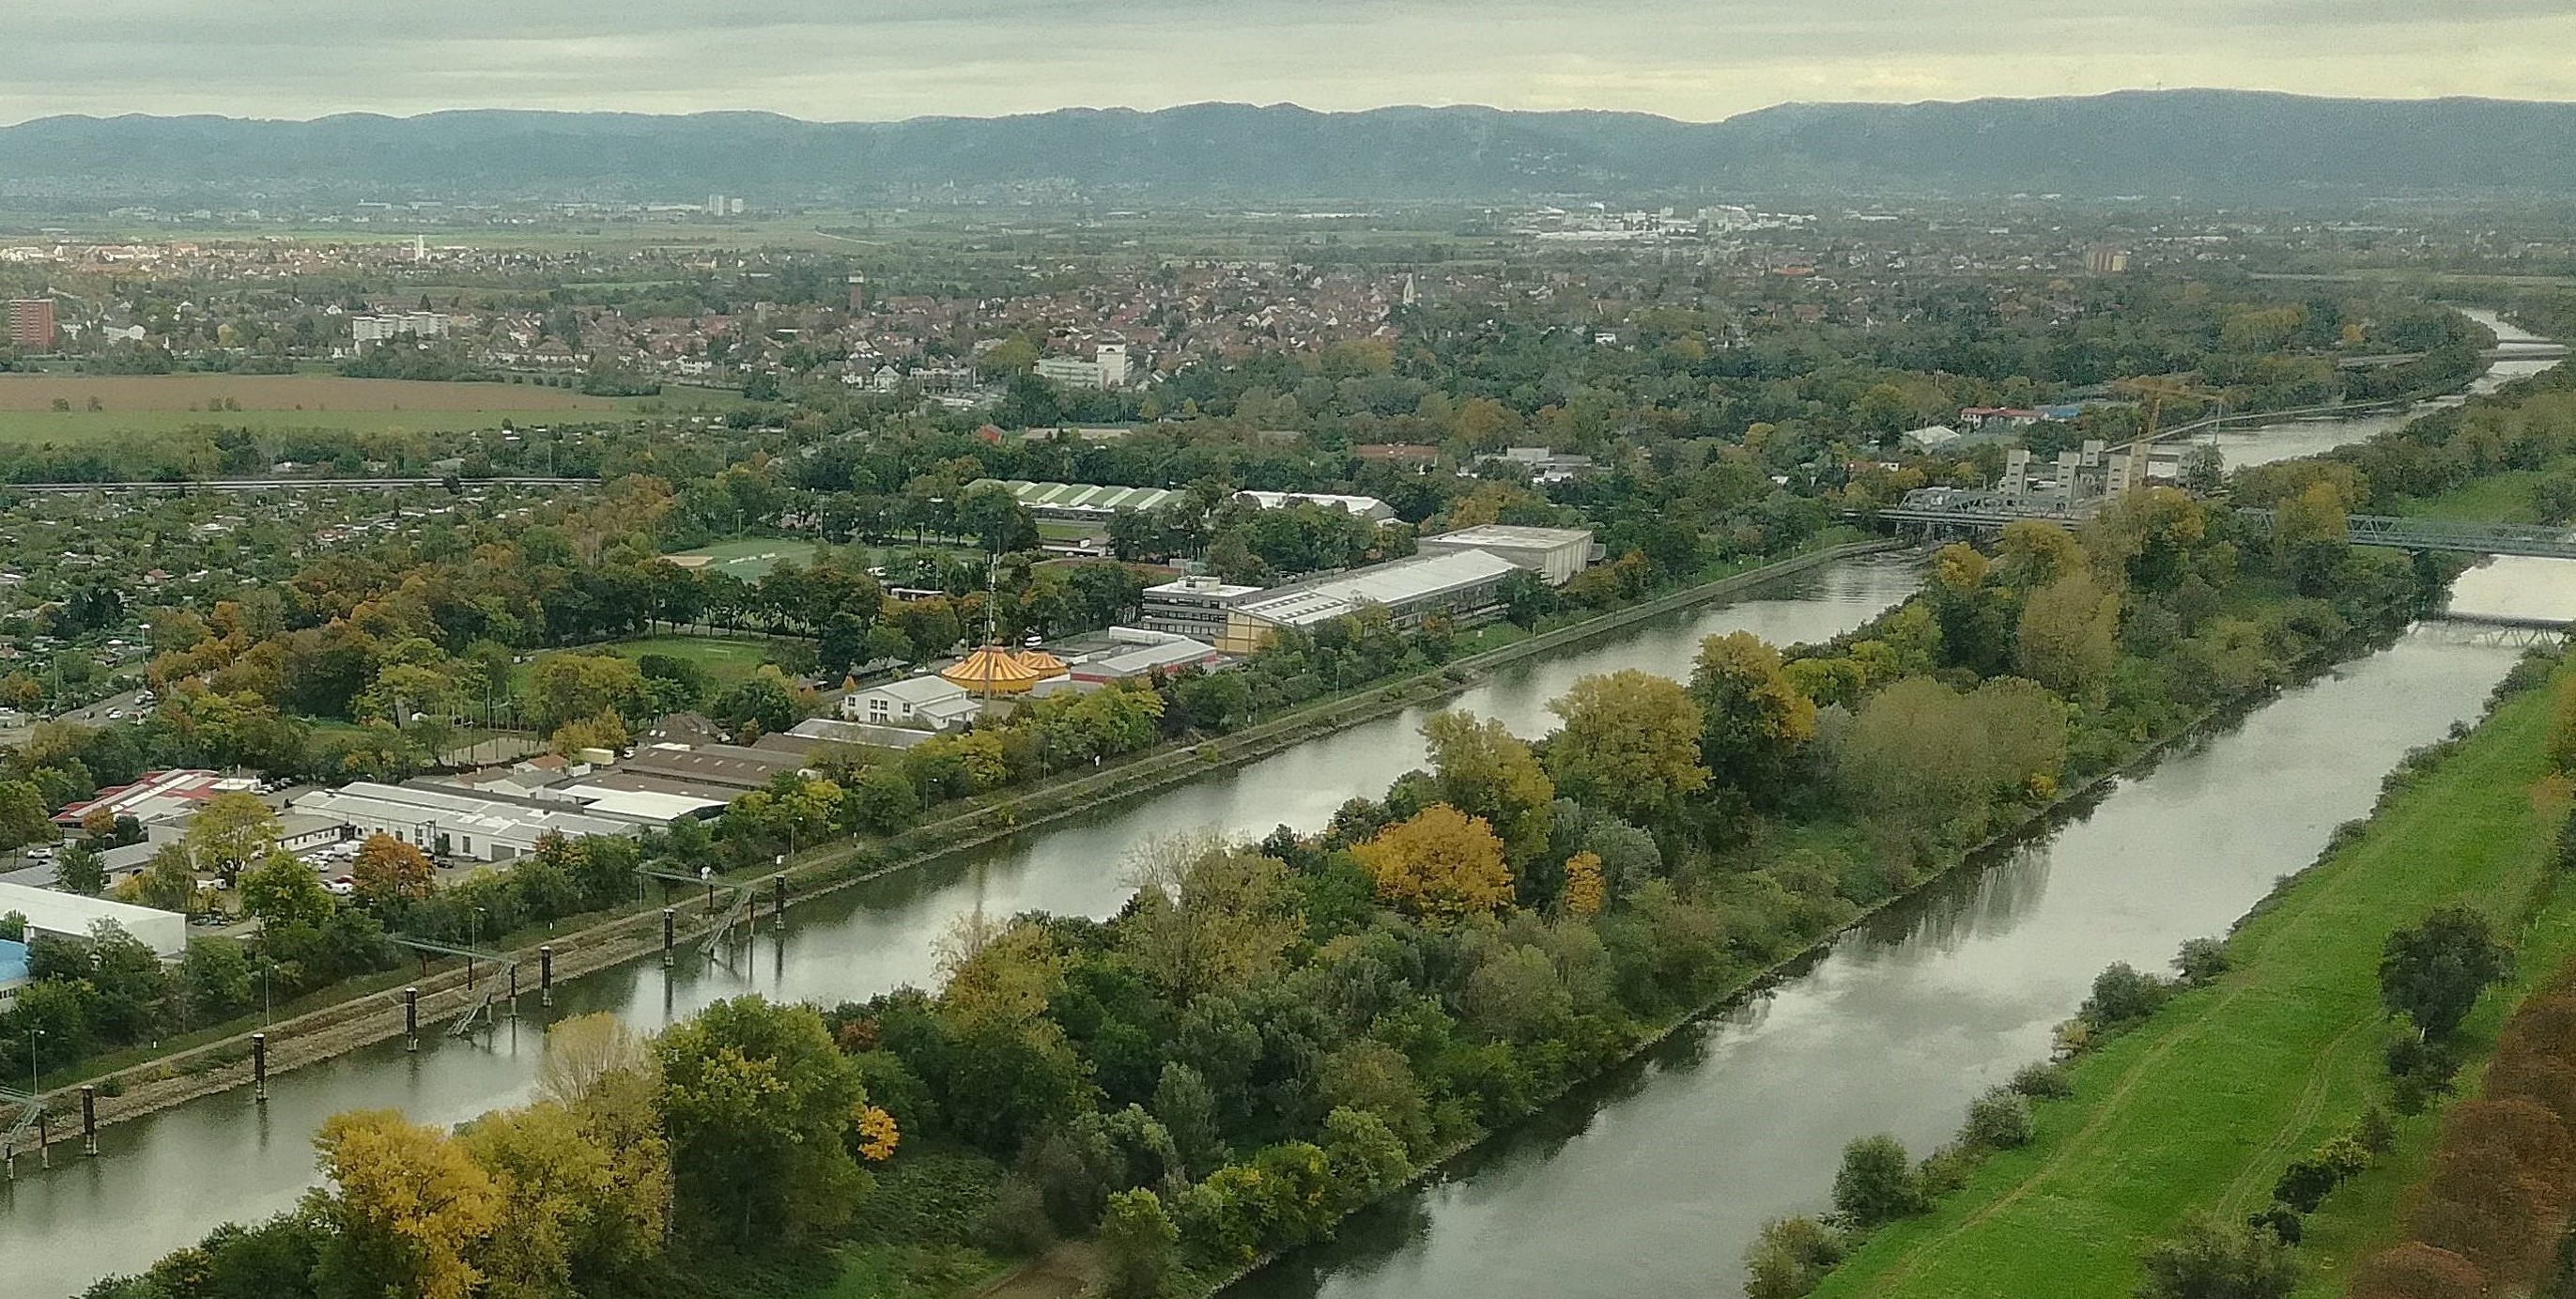 View of River Neckar and Feudenheim